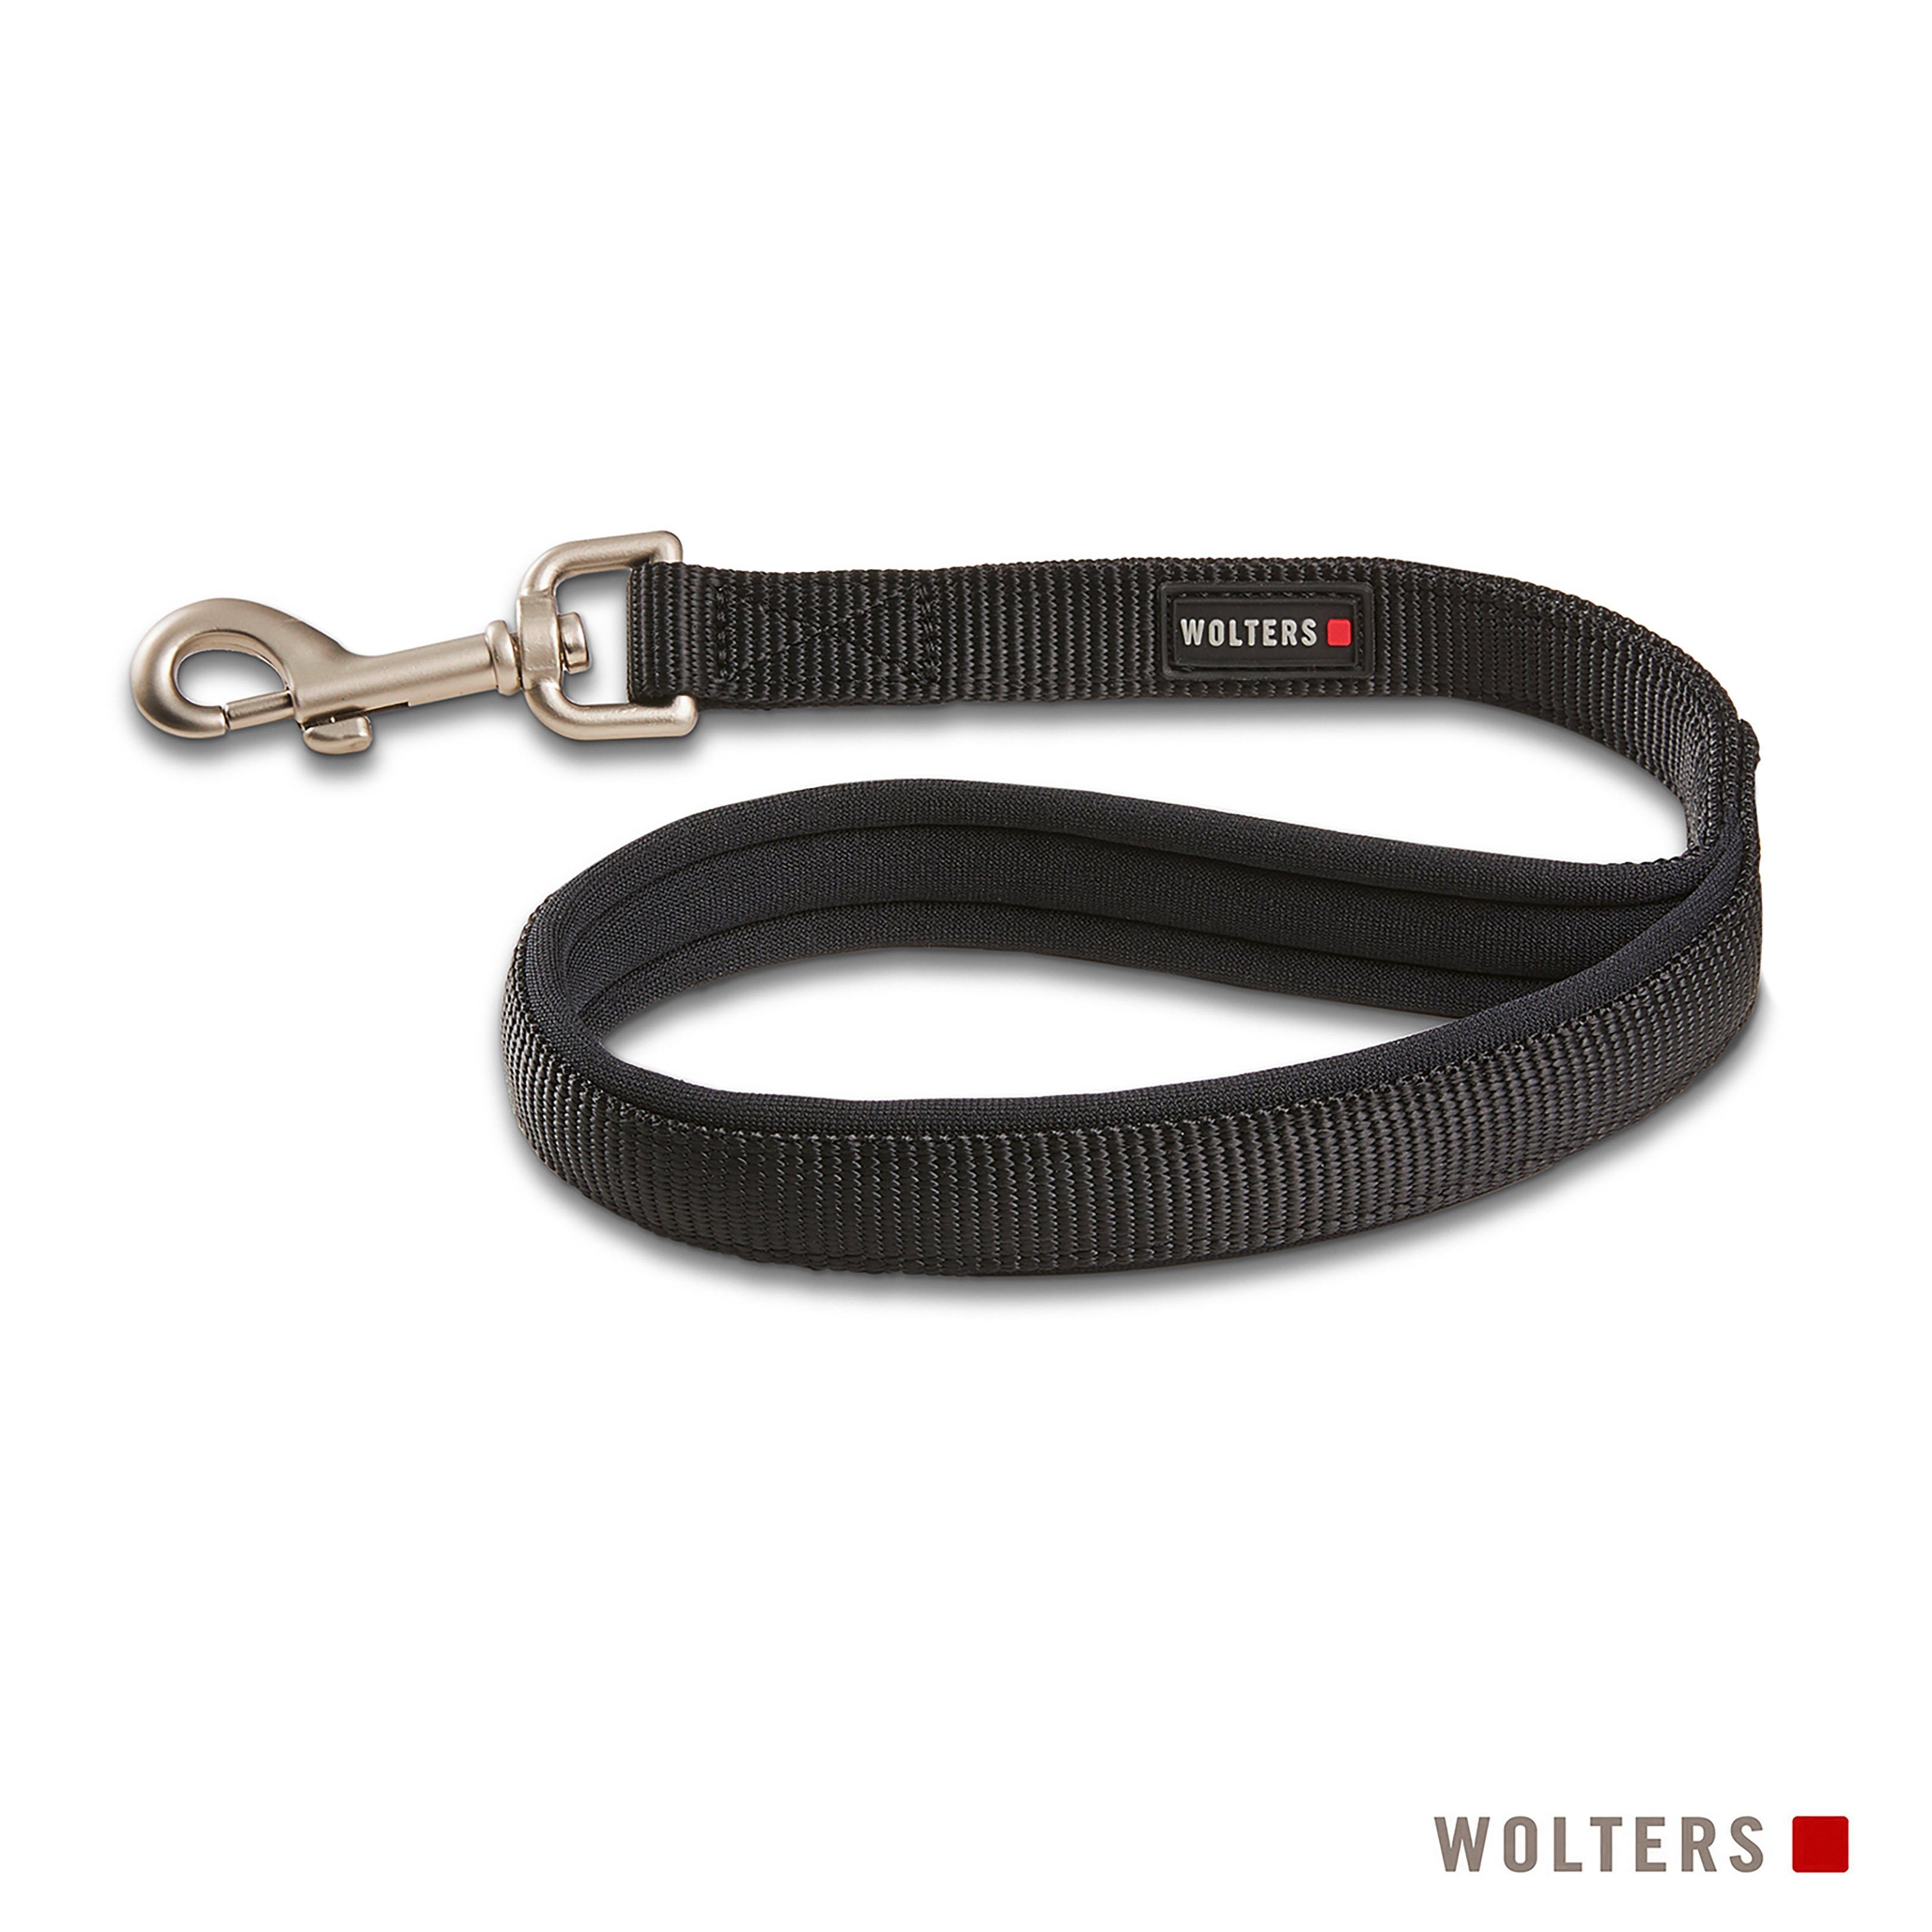 Wolters Hundeleine Professional Comfort Kurzführer, Nylon, Neopren, in verschiedenen Größen, in verschiedenen Längen, gepolstert schwarz/schwarz